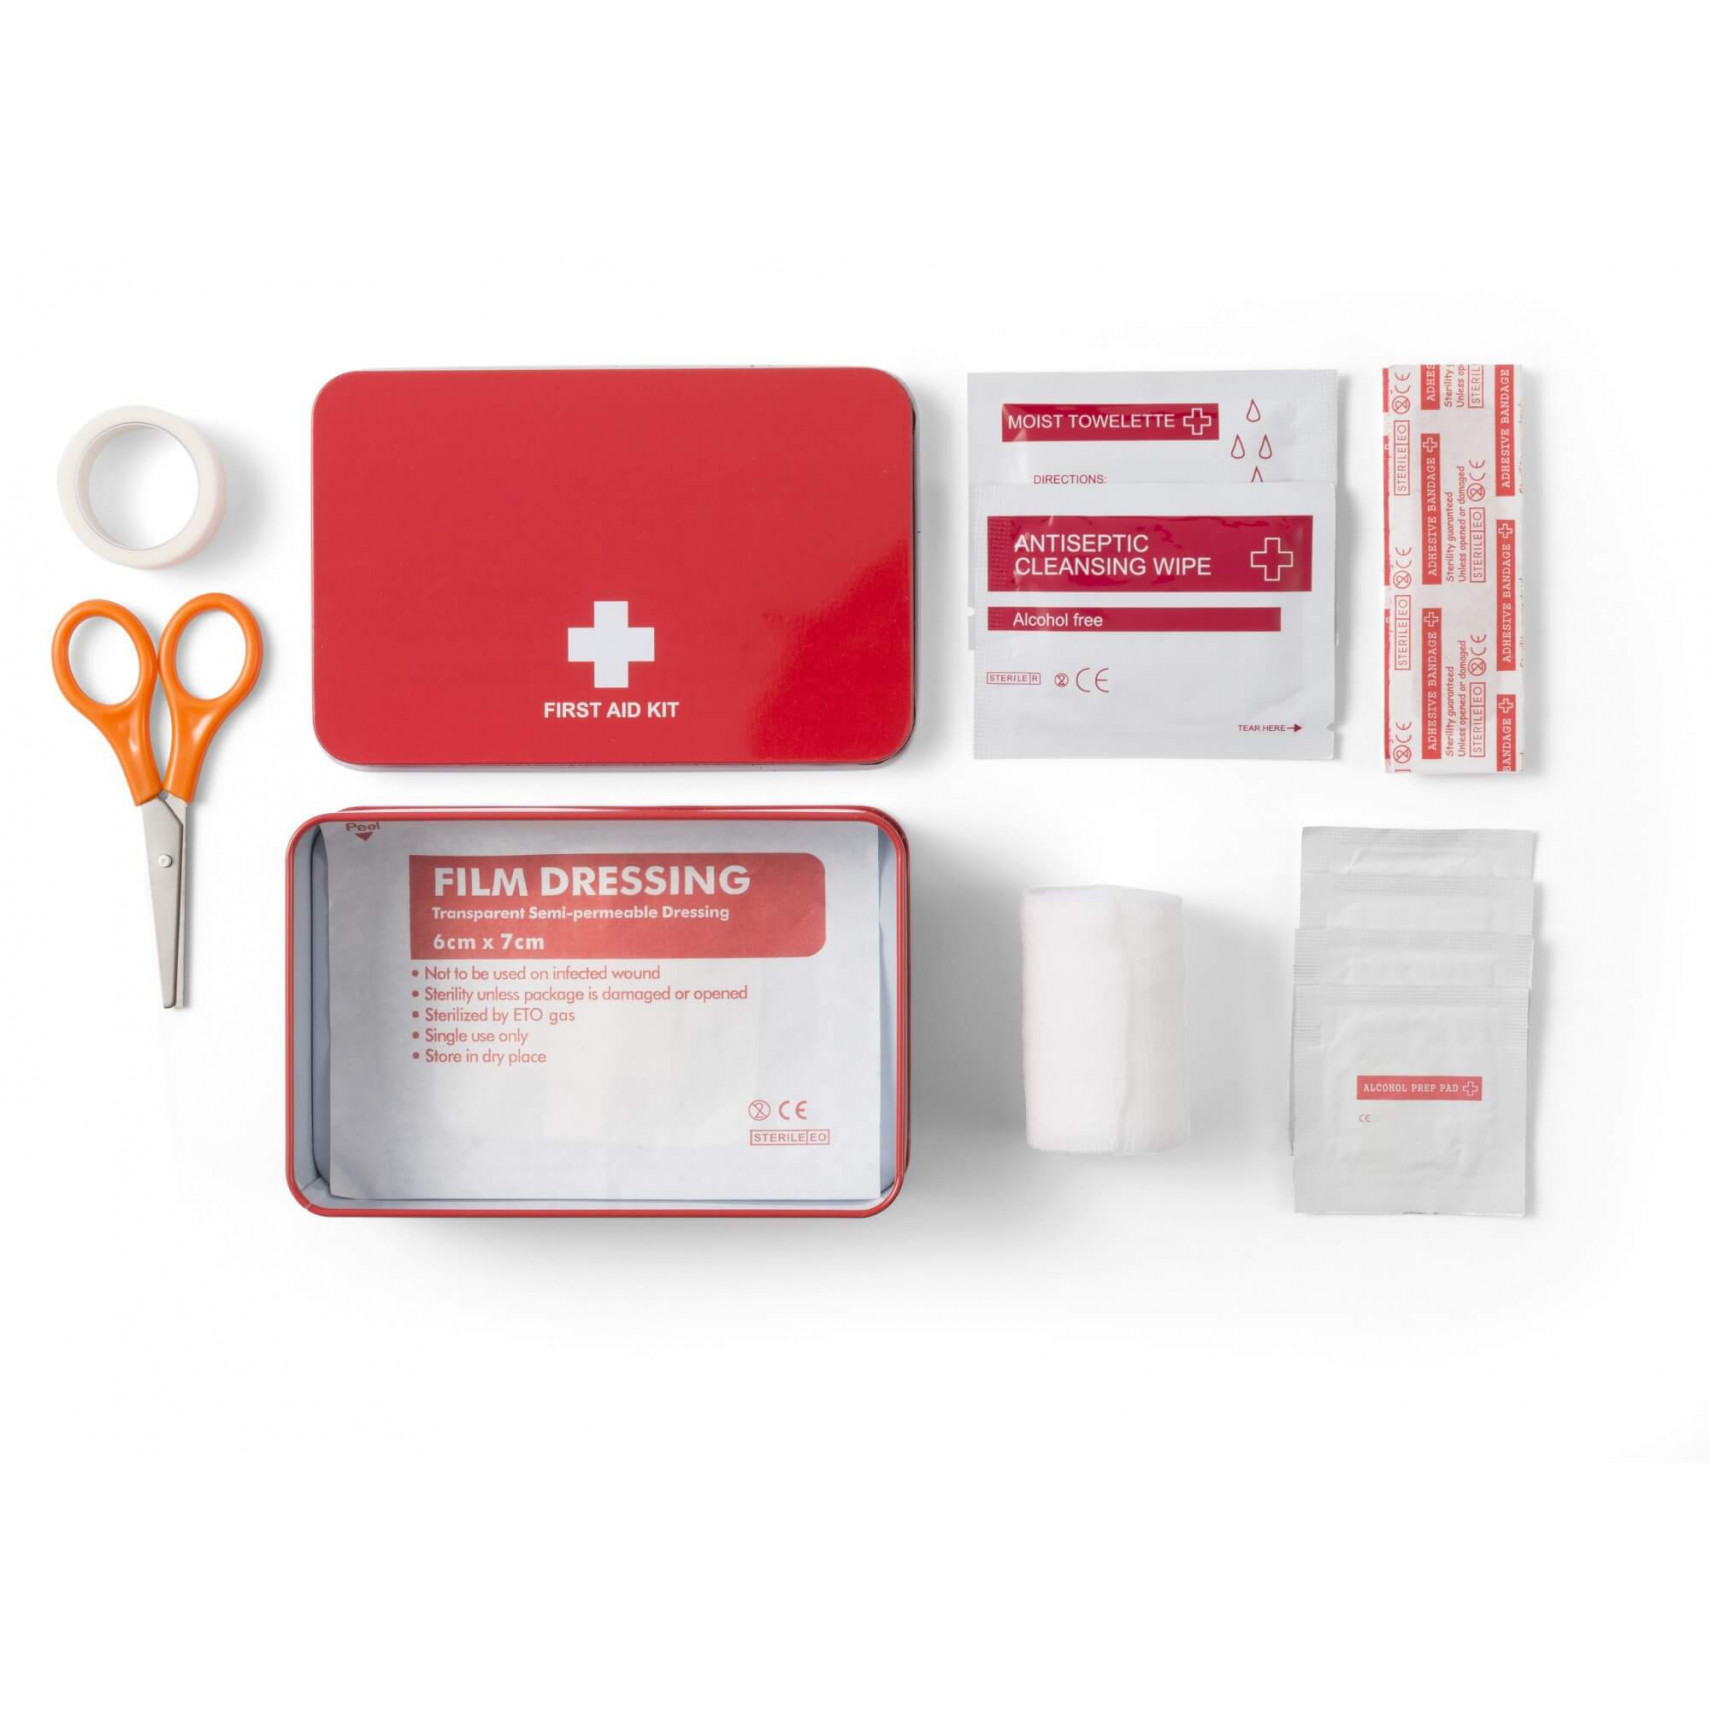 Kit complet d'accessoires de survie et de premiers secours